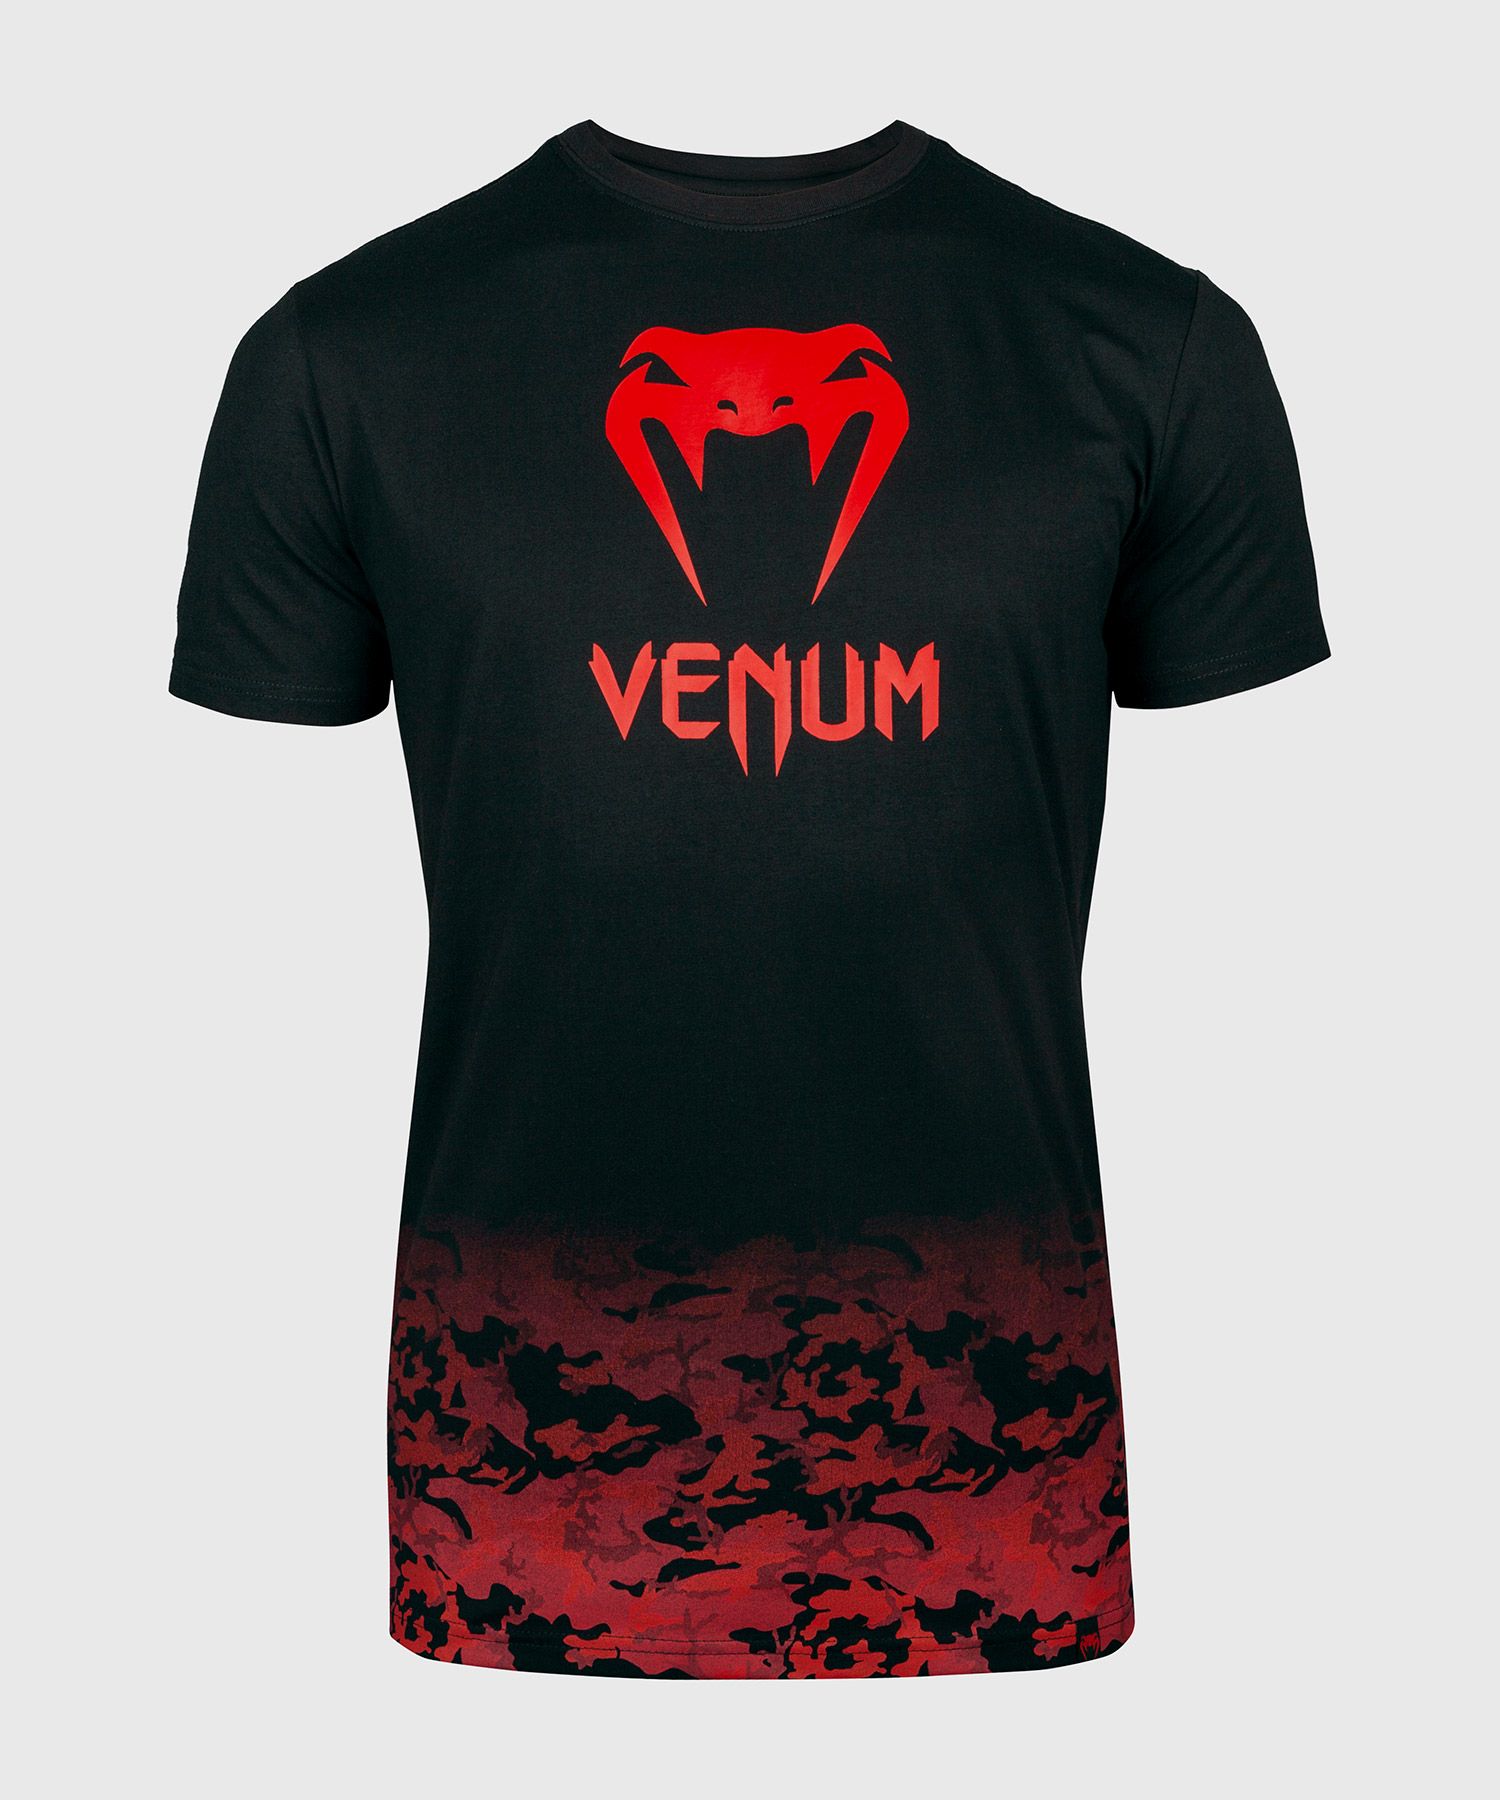 T-shirt Classic Venum - Nero/Rosso